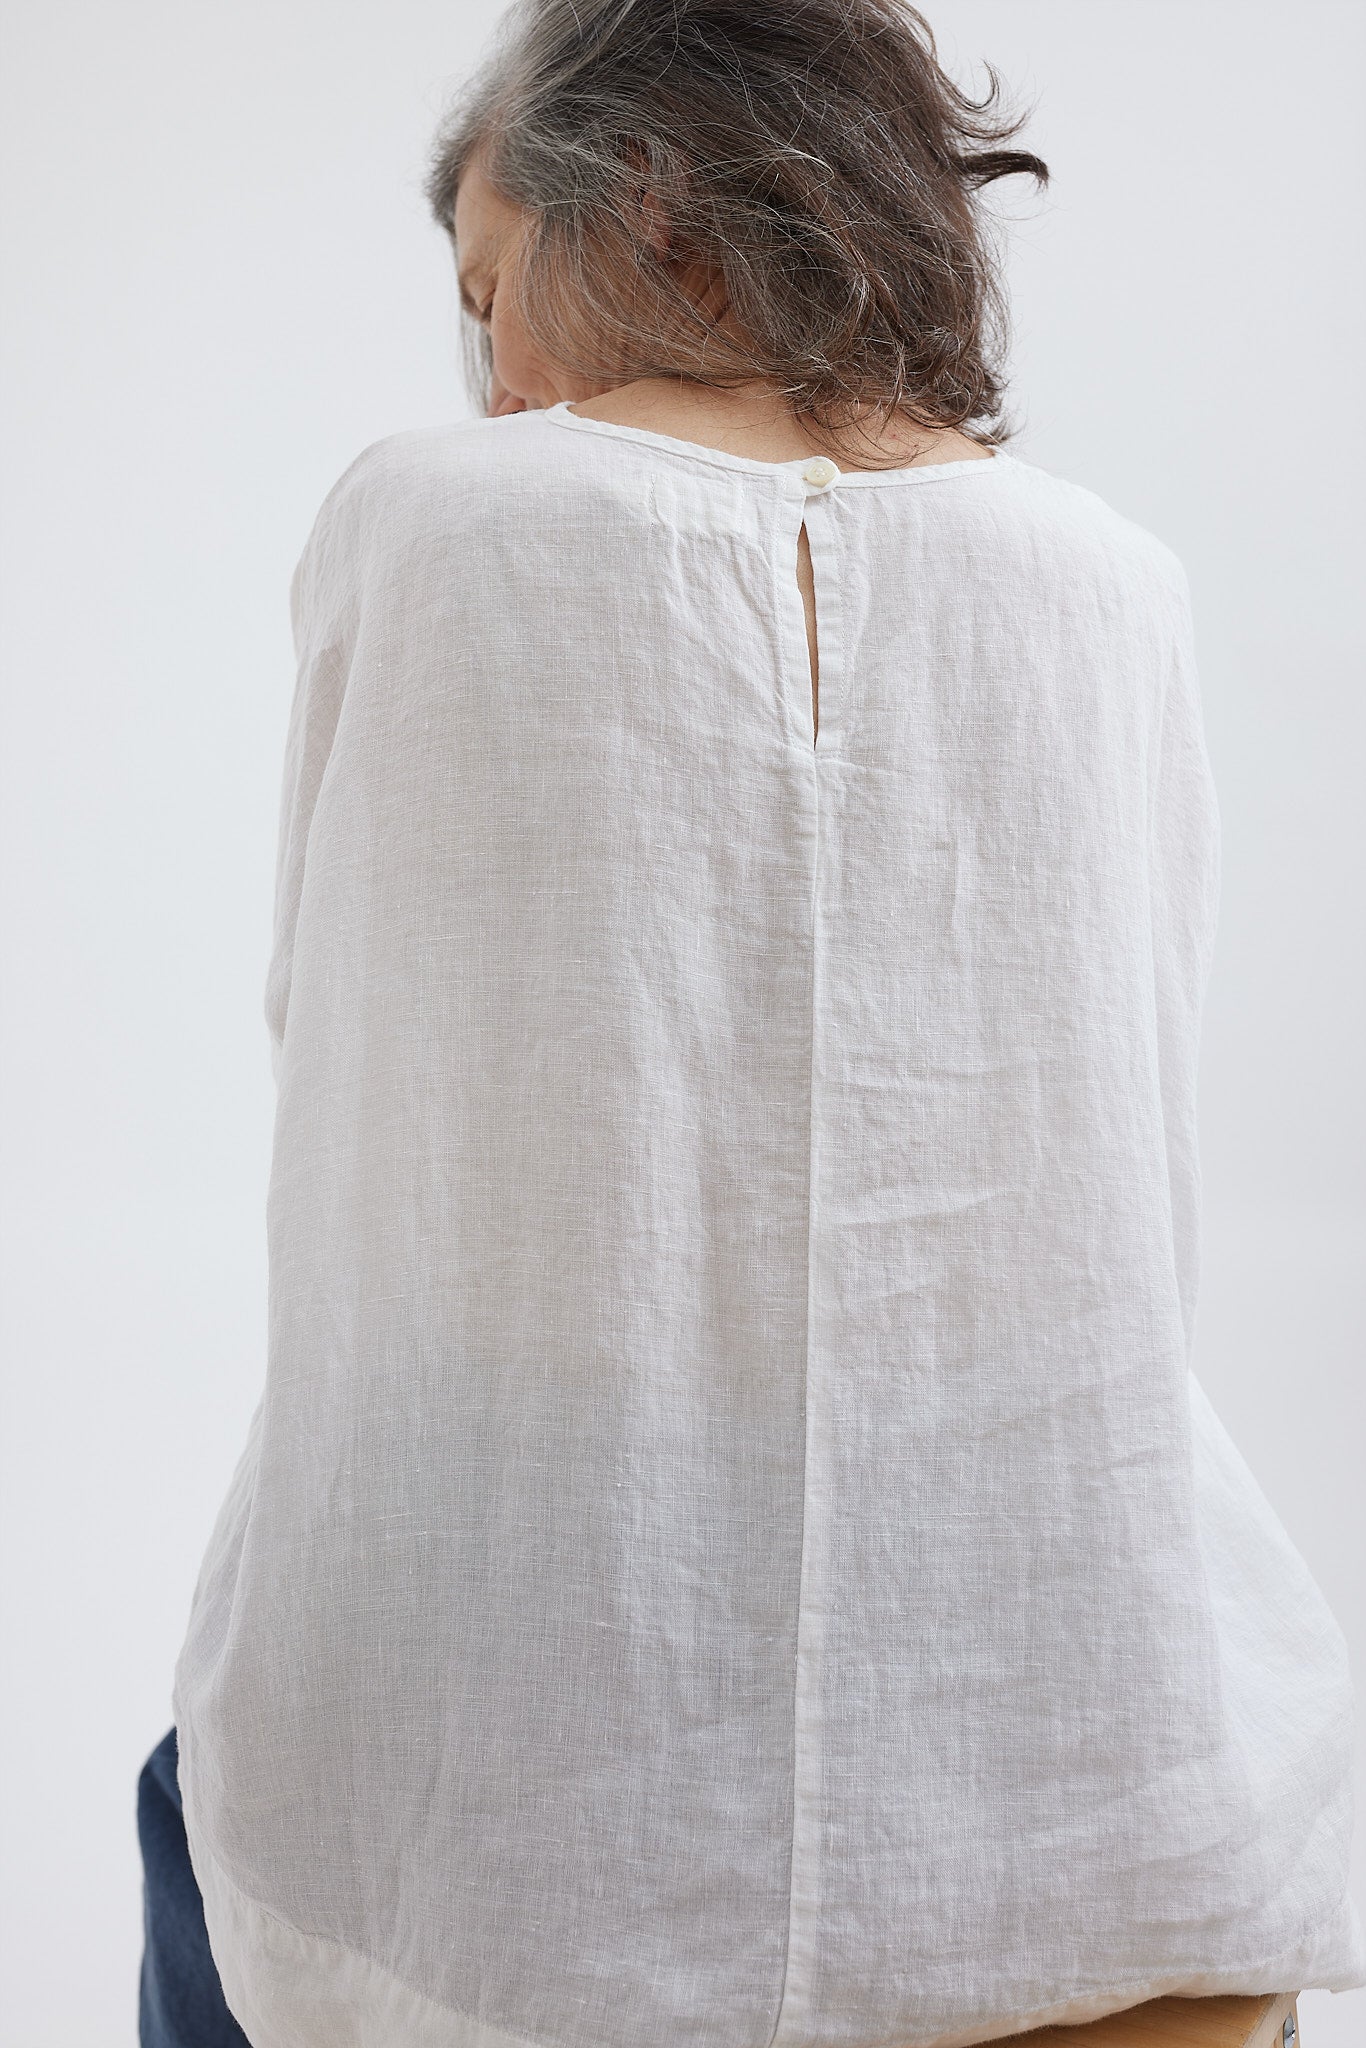 Avril T-Shirt - Light Linen